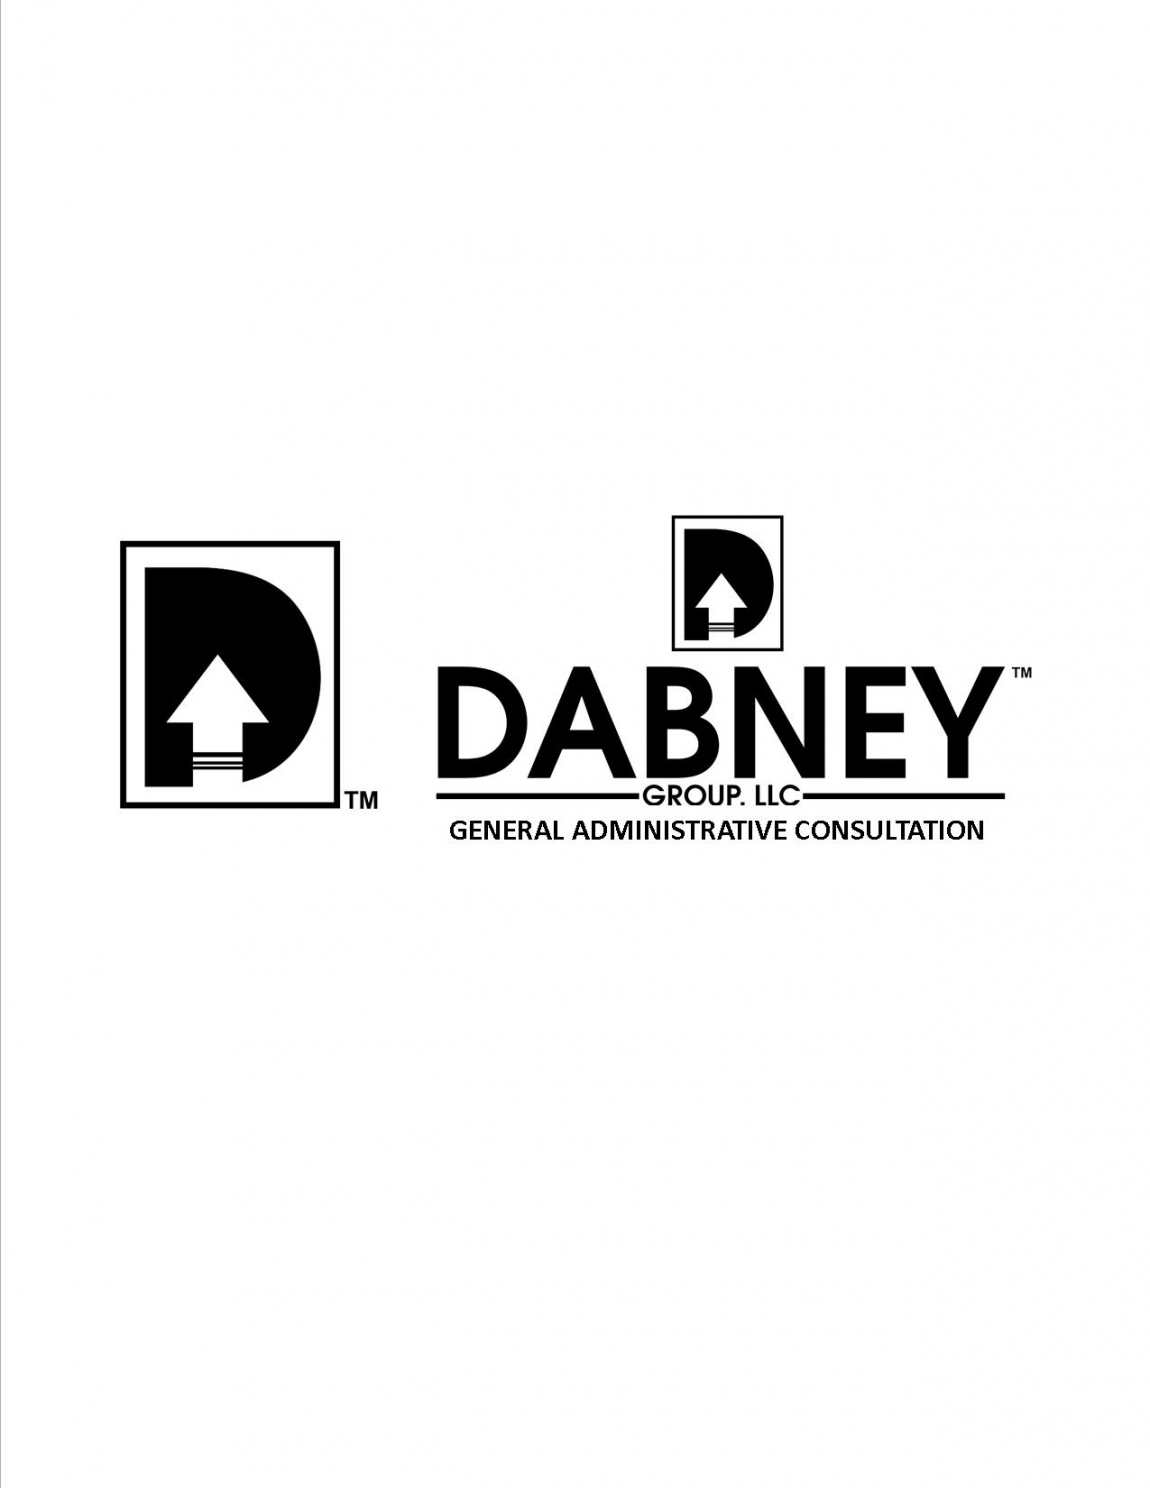 DR_R_M_Dabney Logo